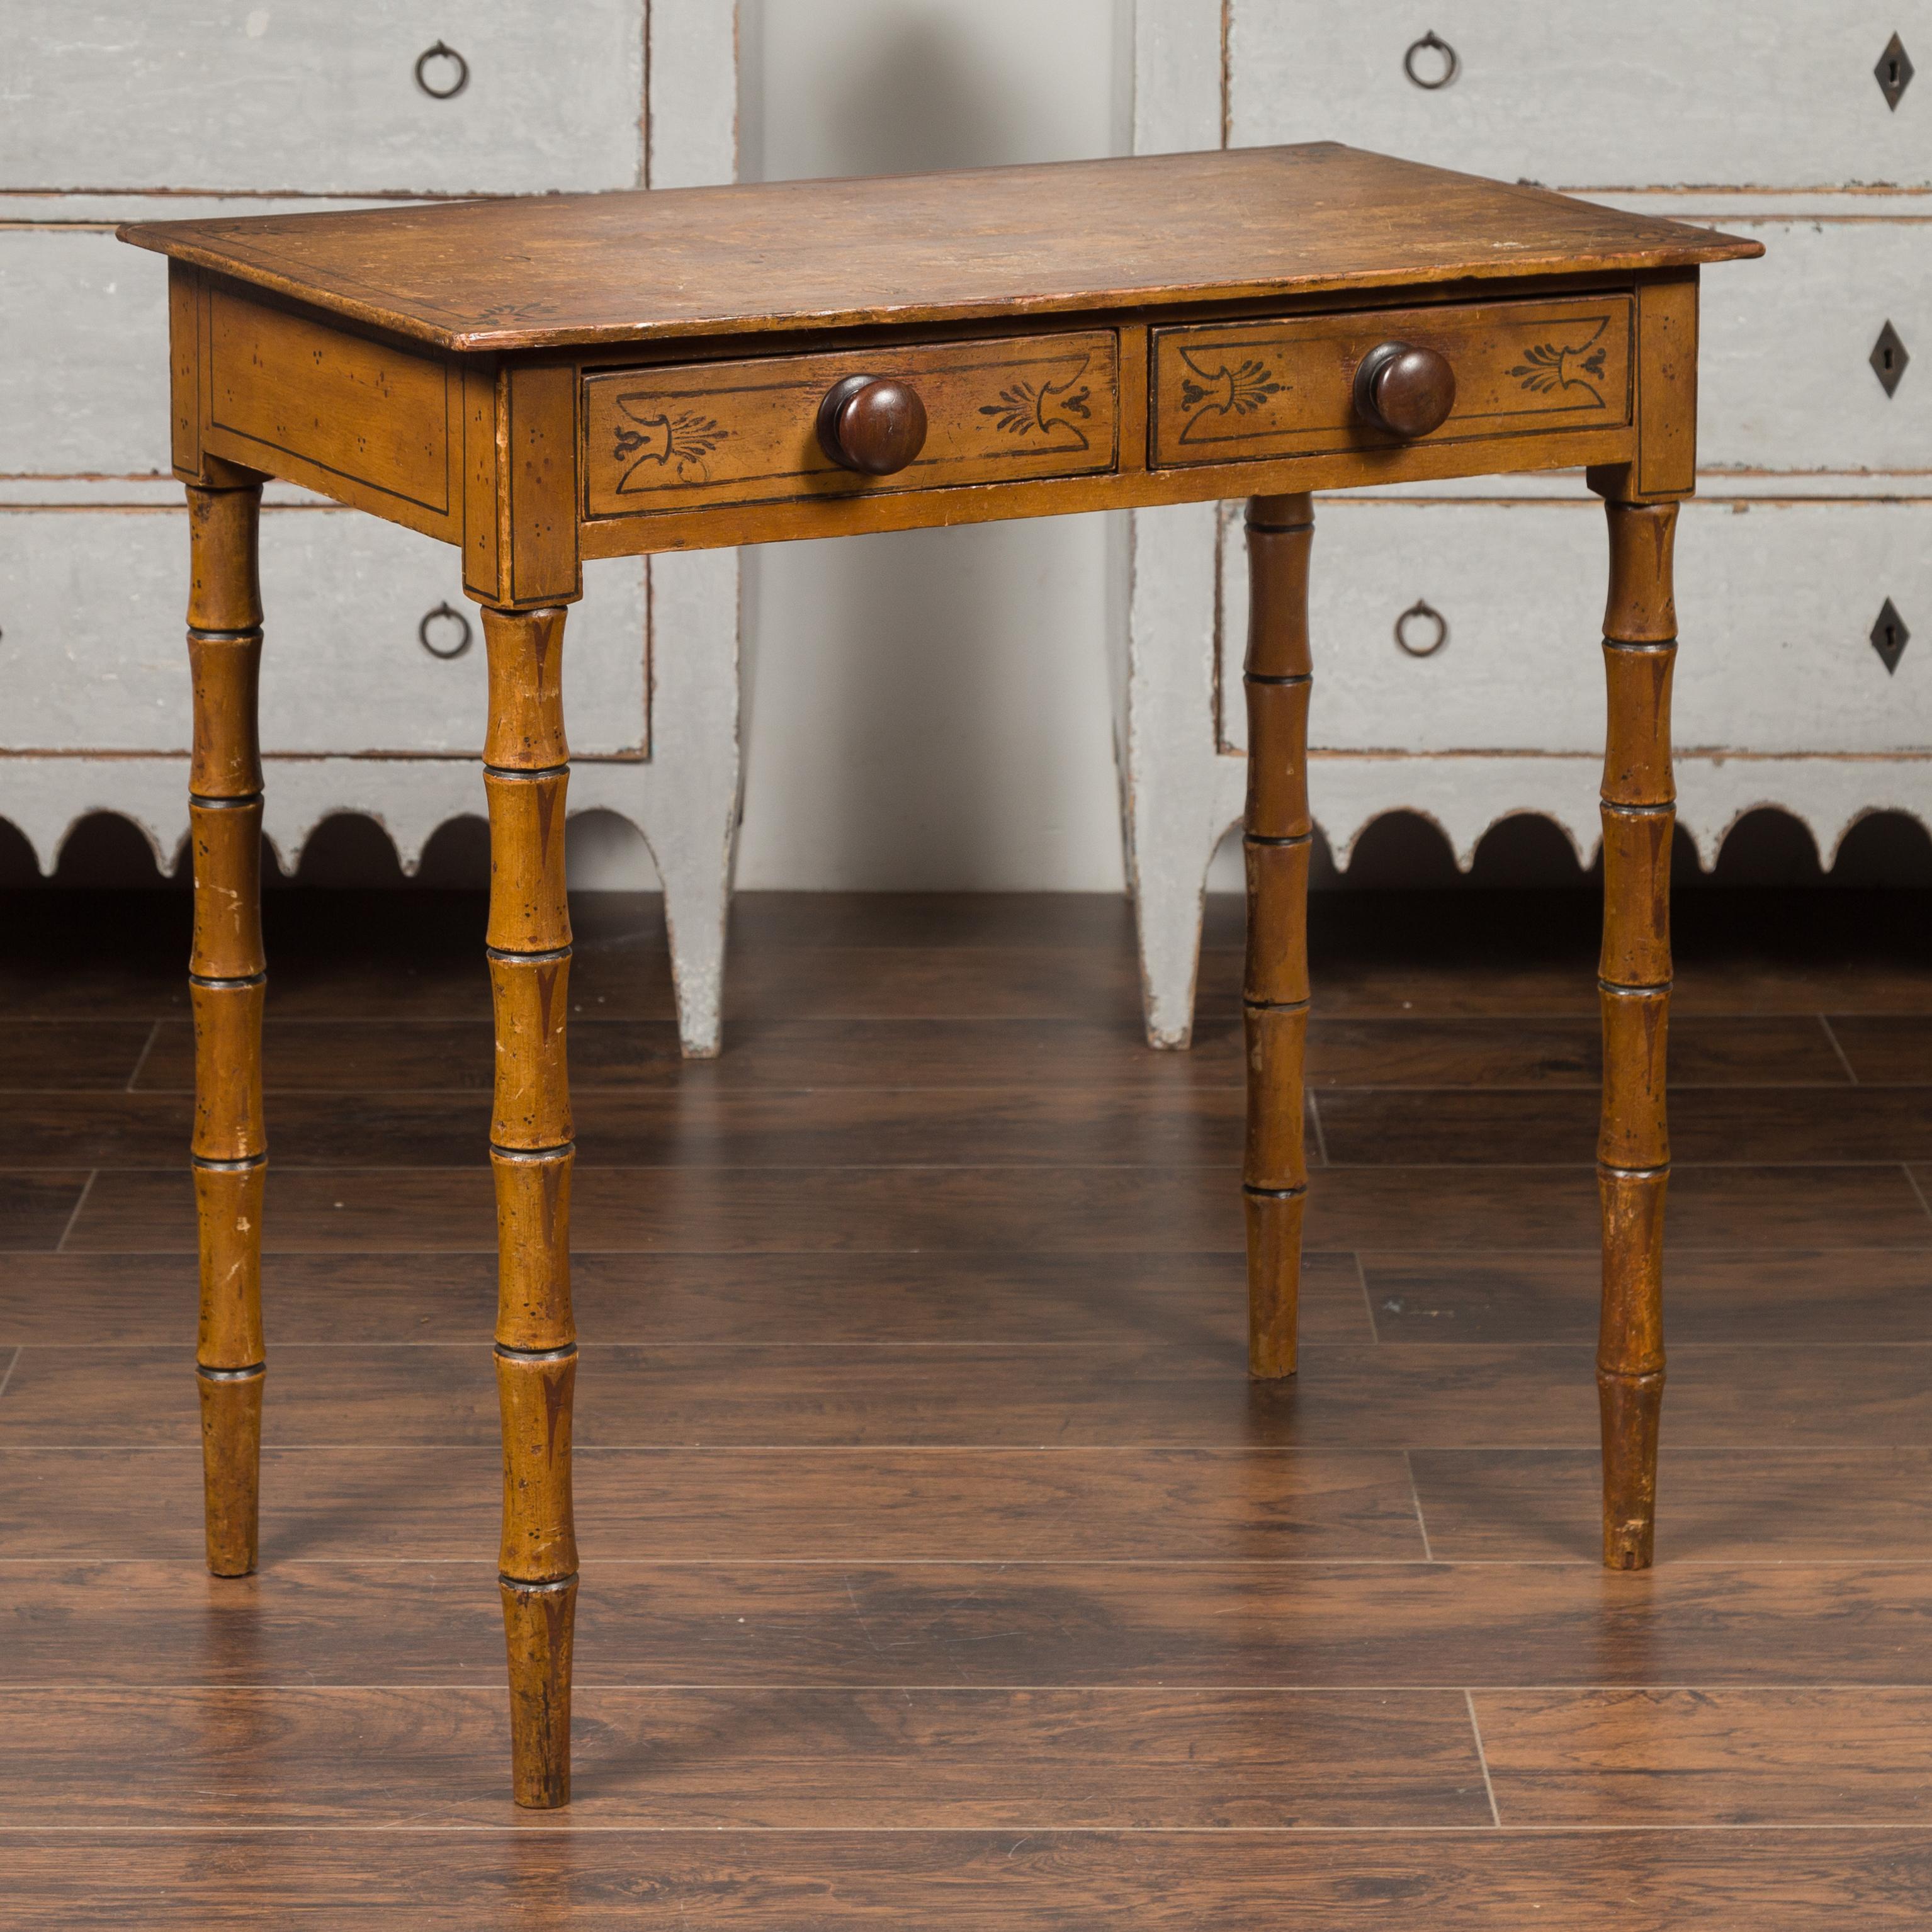 Table anglaise peinte de la fin du 19e siècle, avec deux tiroirs et des pieds en faux bambou. Née en Angleterre dans les dernières années du XIXe siècle, cette table présente un plateau rectangulaire à l'aspect vieilli, surmontant deux tiroirs munis